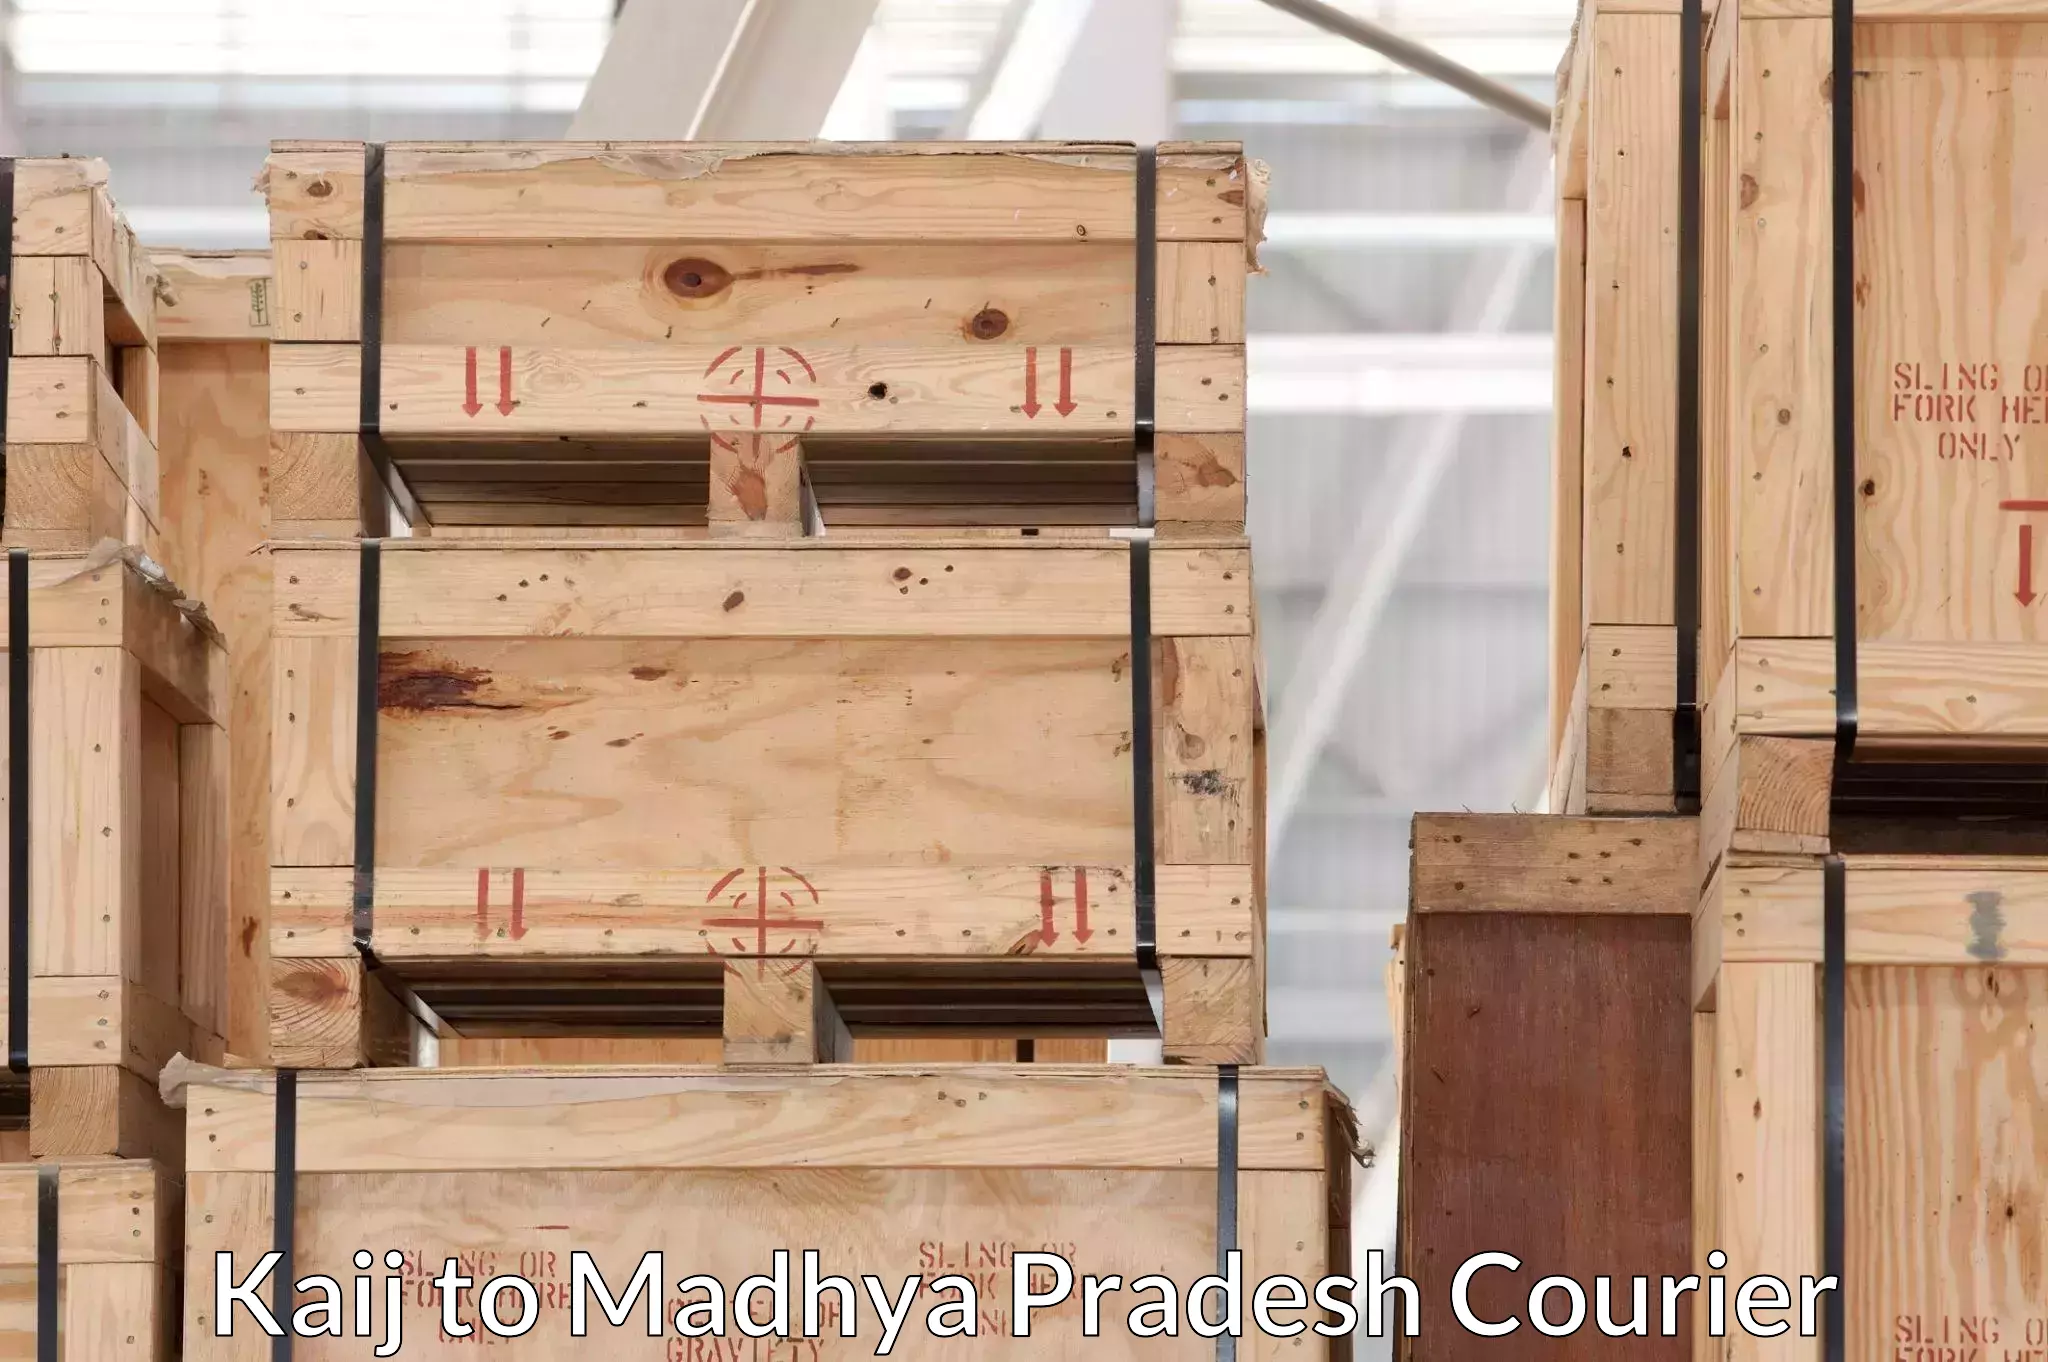 Customized moving experience Kaij to Madhya Pradesh